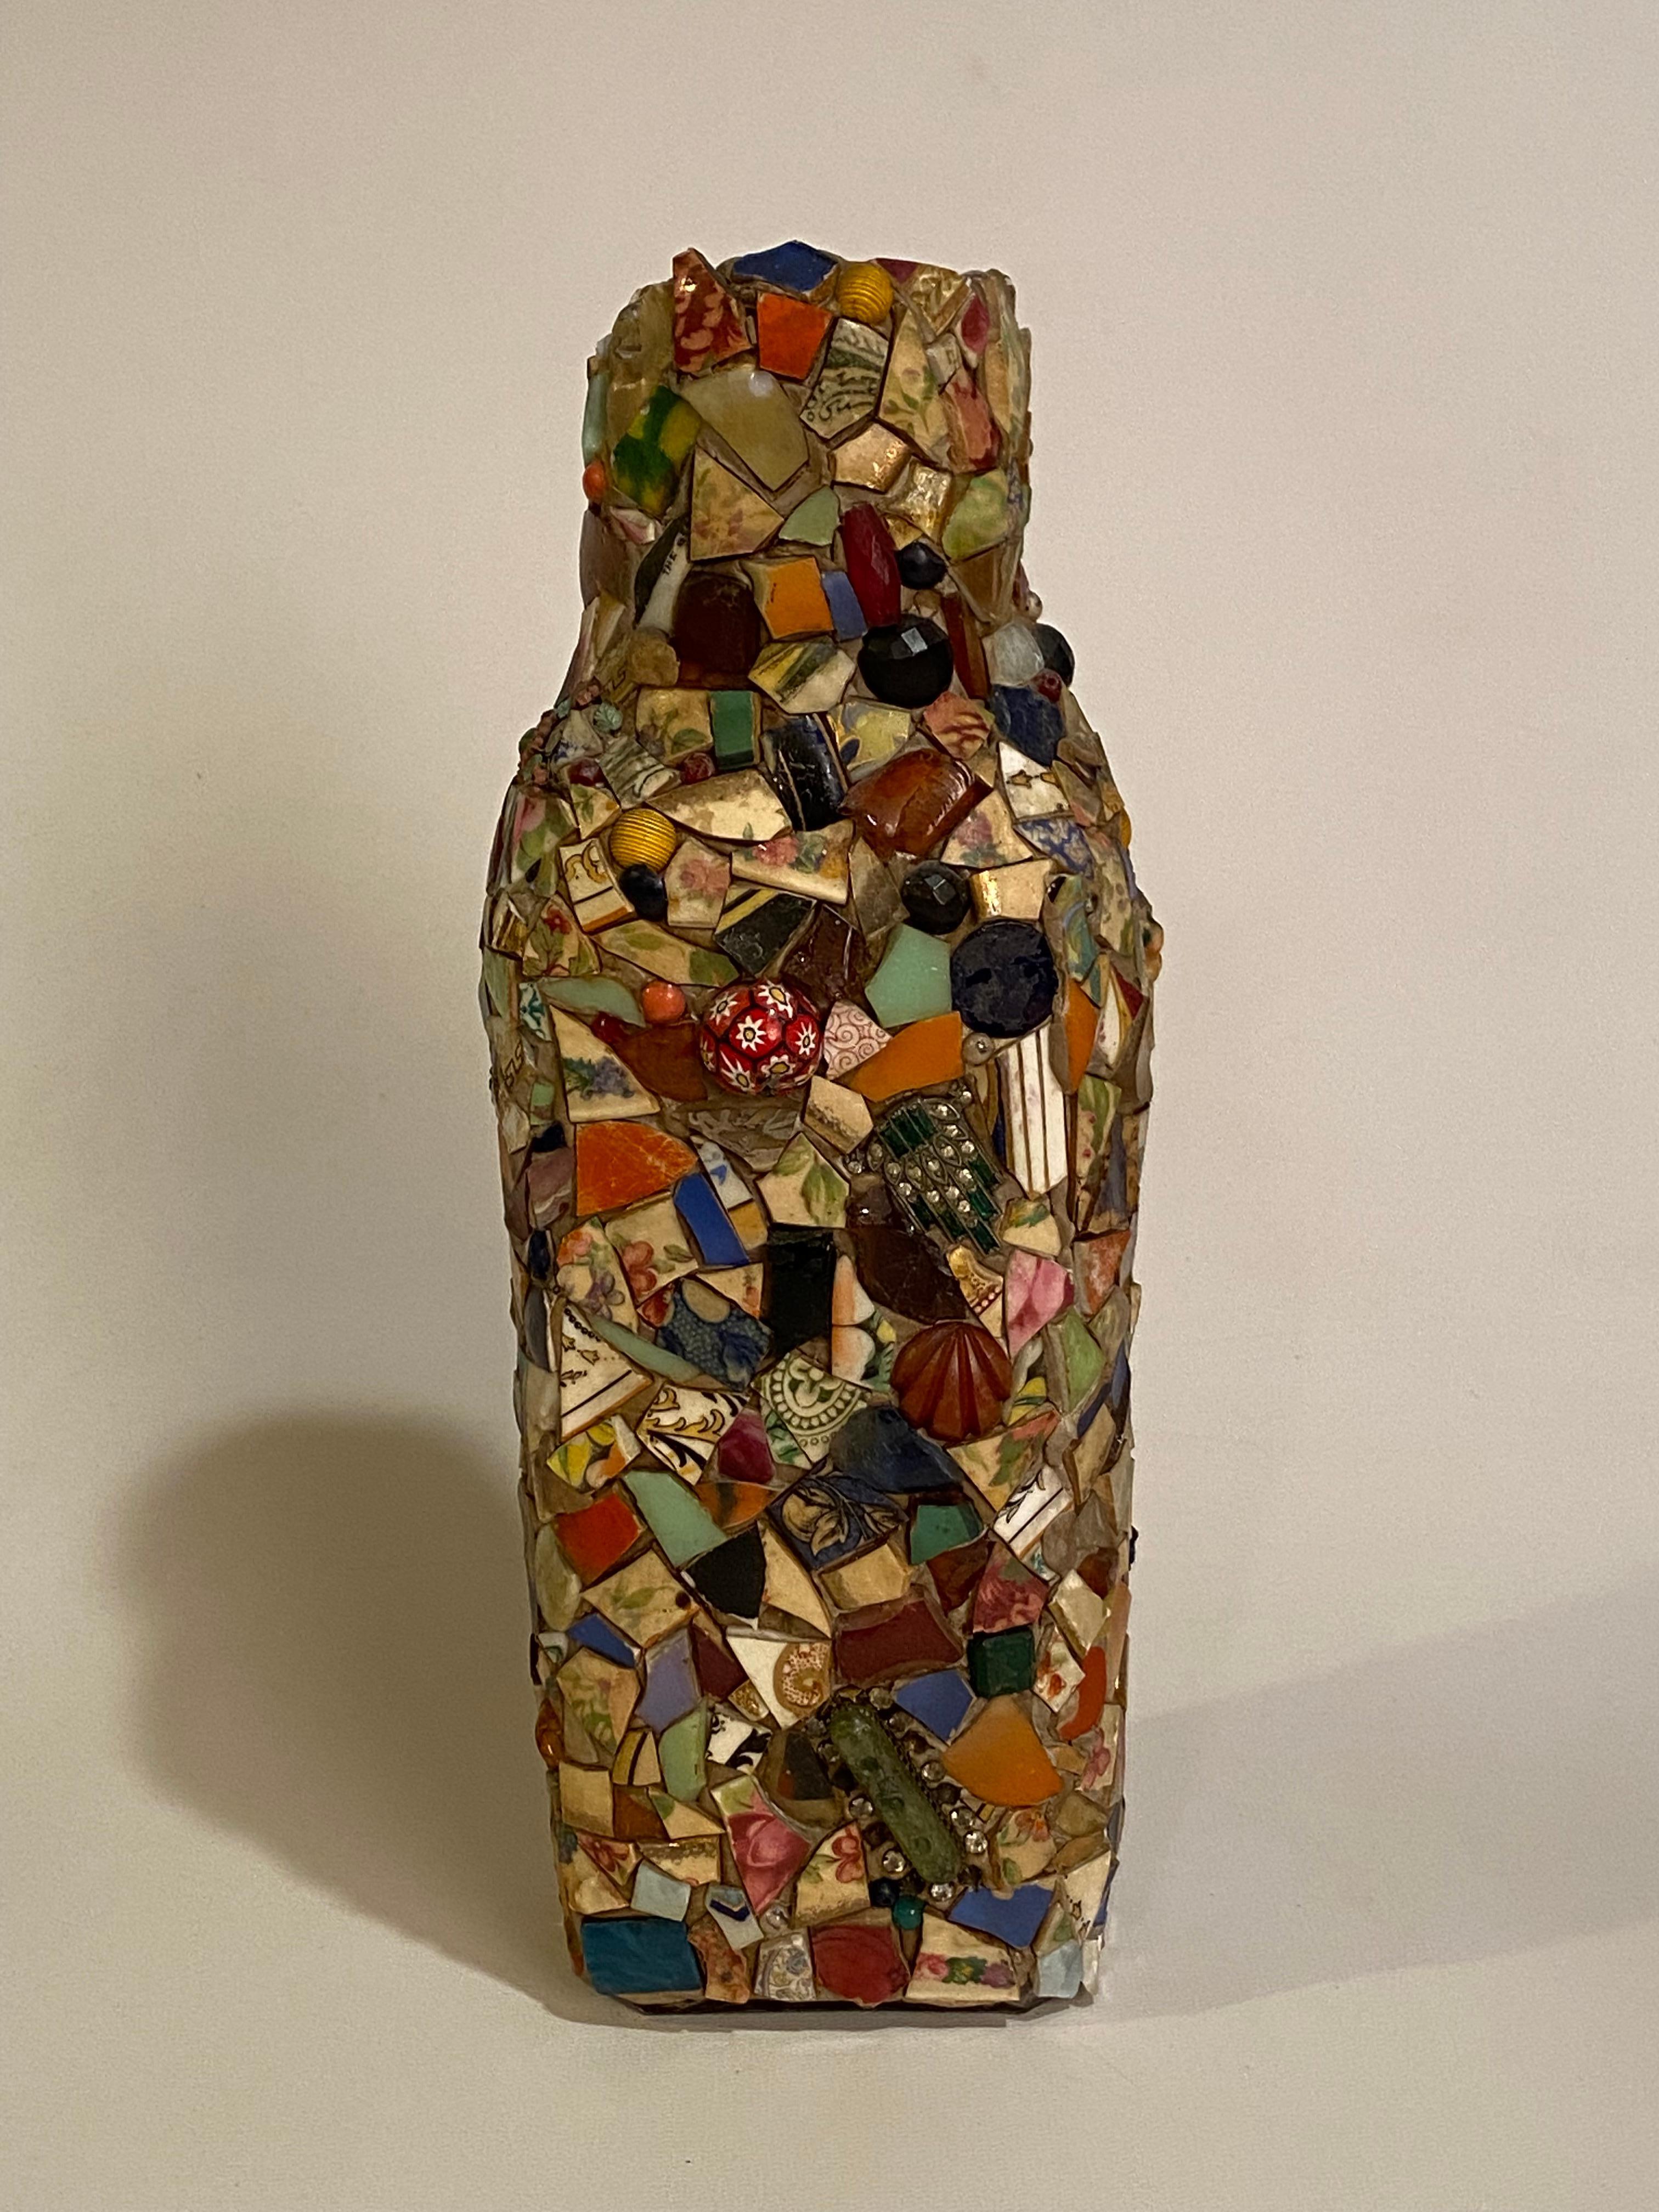 Eine schöne und komplexe Mosaikflasche der Volkskunst. Milchflasche aus klarem Glas, die mit unzähligen Scherben bedeckt ist, zerbrochenes Porzellan, Schmuck, Bakelit, Glas, Perlen, Töpferwaren, Ton... Eine wundervoll komplexe Menagerie aus